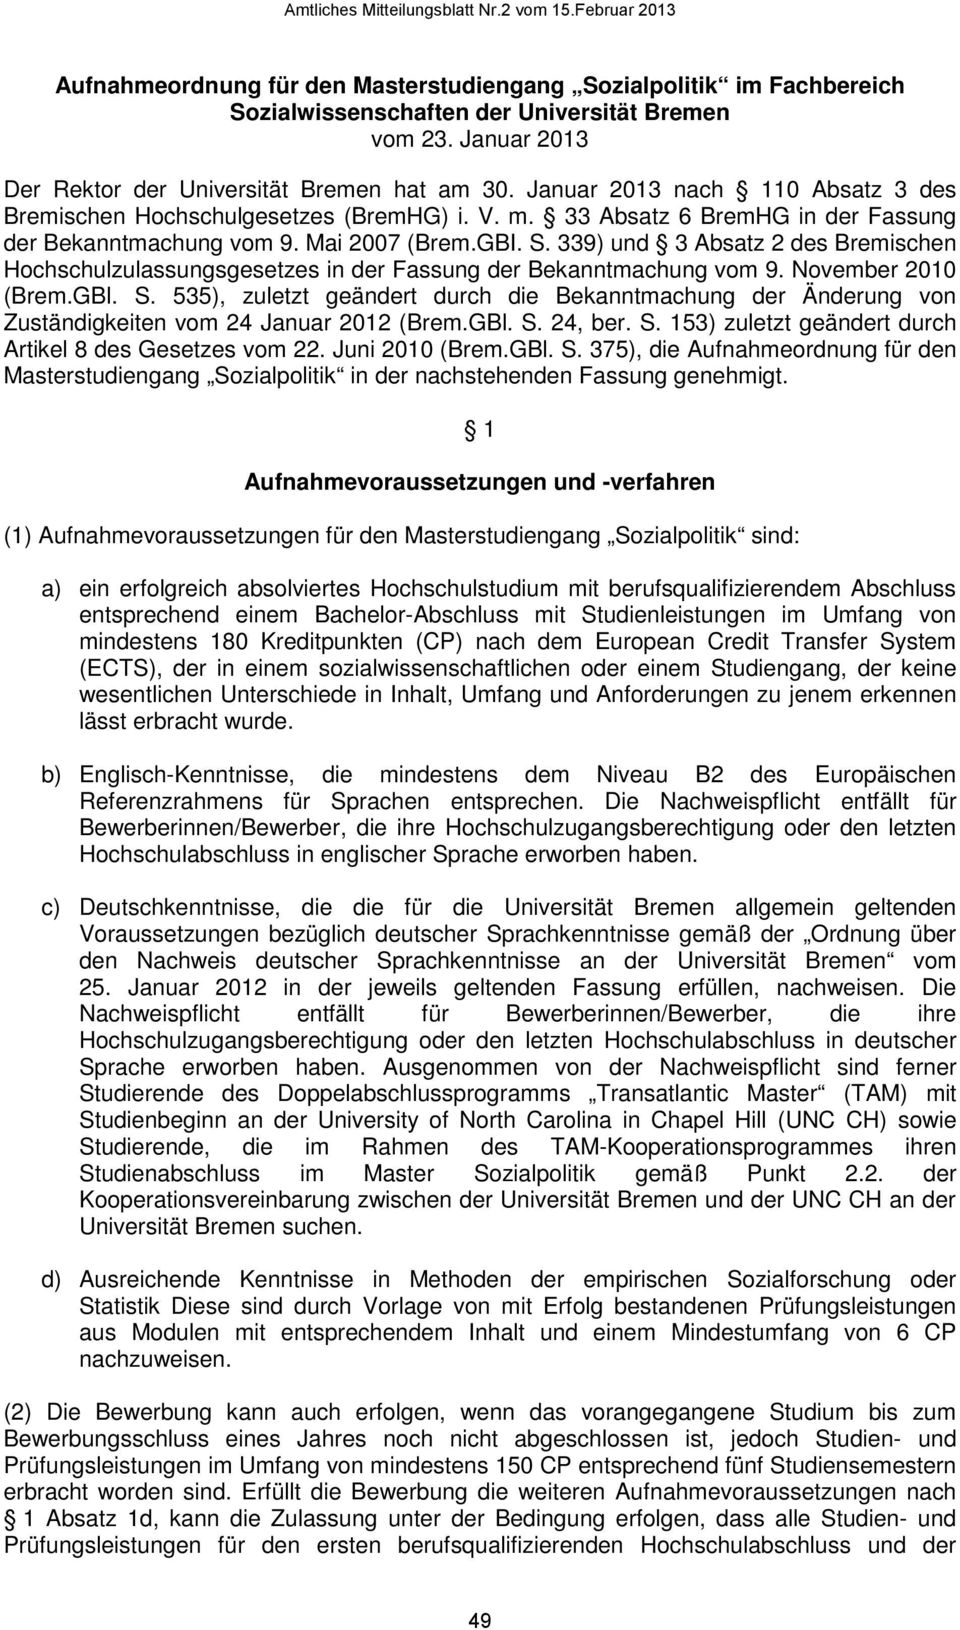 339) und 3 Absatz 2 des Bremischen Hochschulzulassungsgesetzes in der Fassung der Bekanntmachung vom 9. November 2010 (Brem.GBl. S.